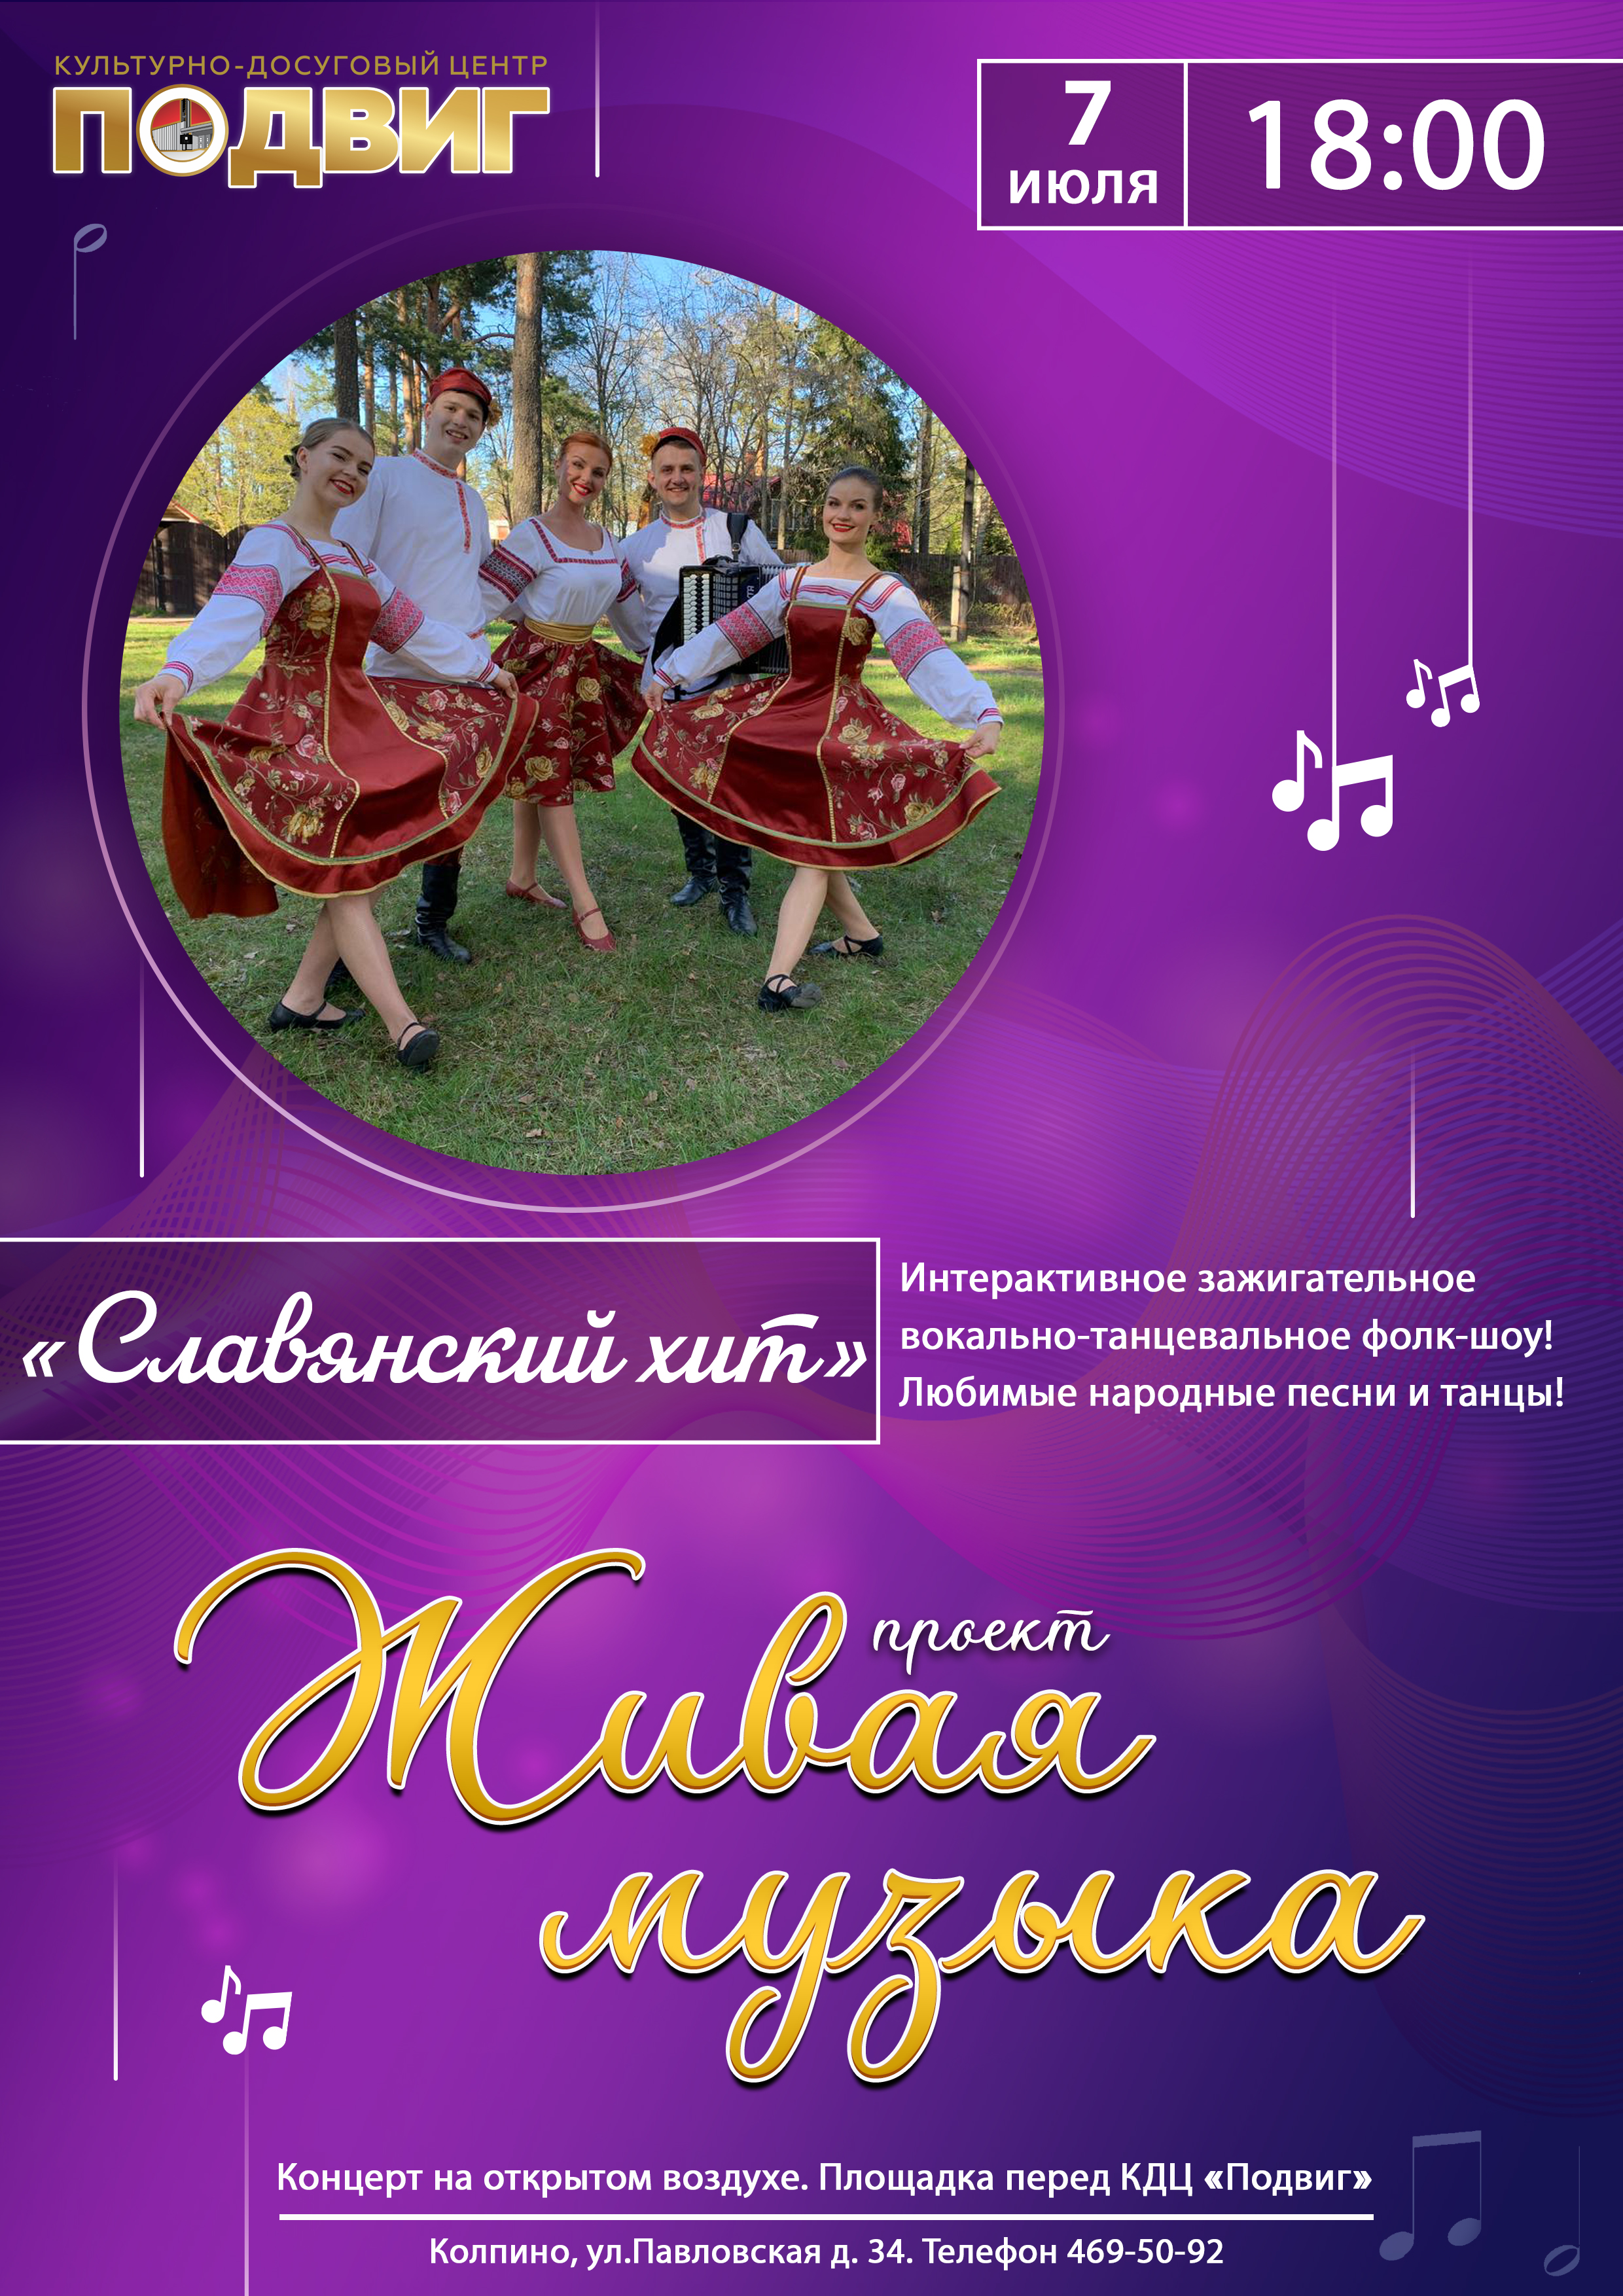 7 июля, в пятницу, в 18:00 на площадке перед КДЦ "Подвиг" выступит фольк-шоу группа "Славянский хит"